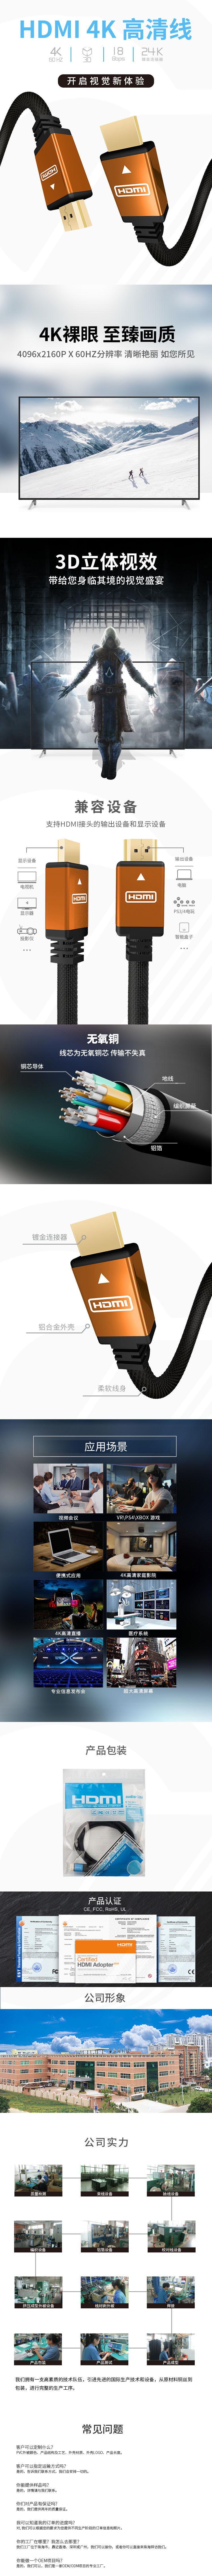 橙色鋁殼 HDMI 2.0中文.jpg